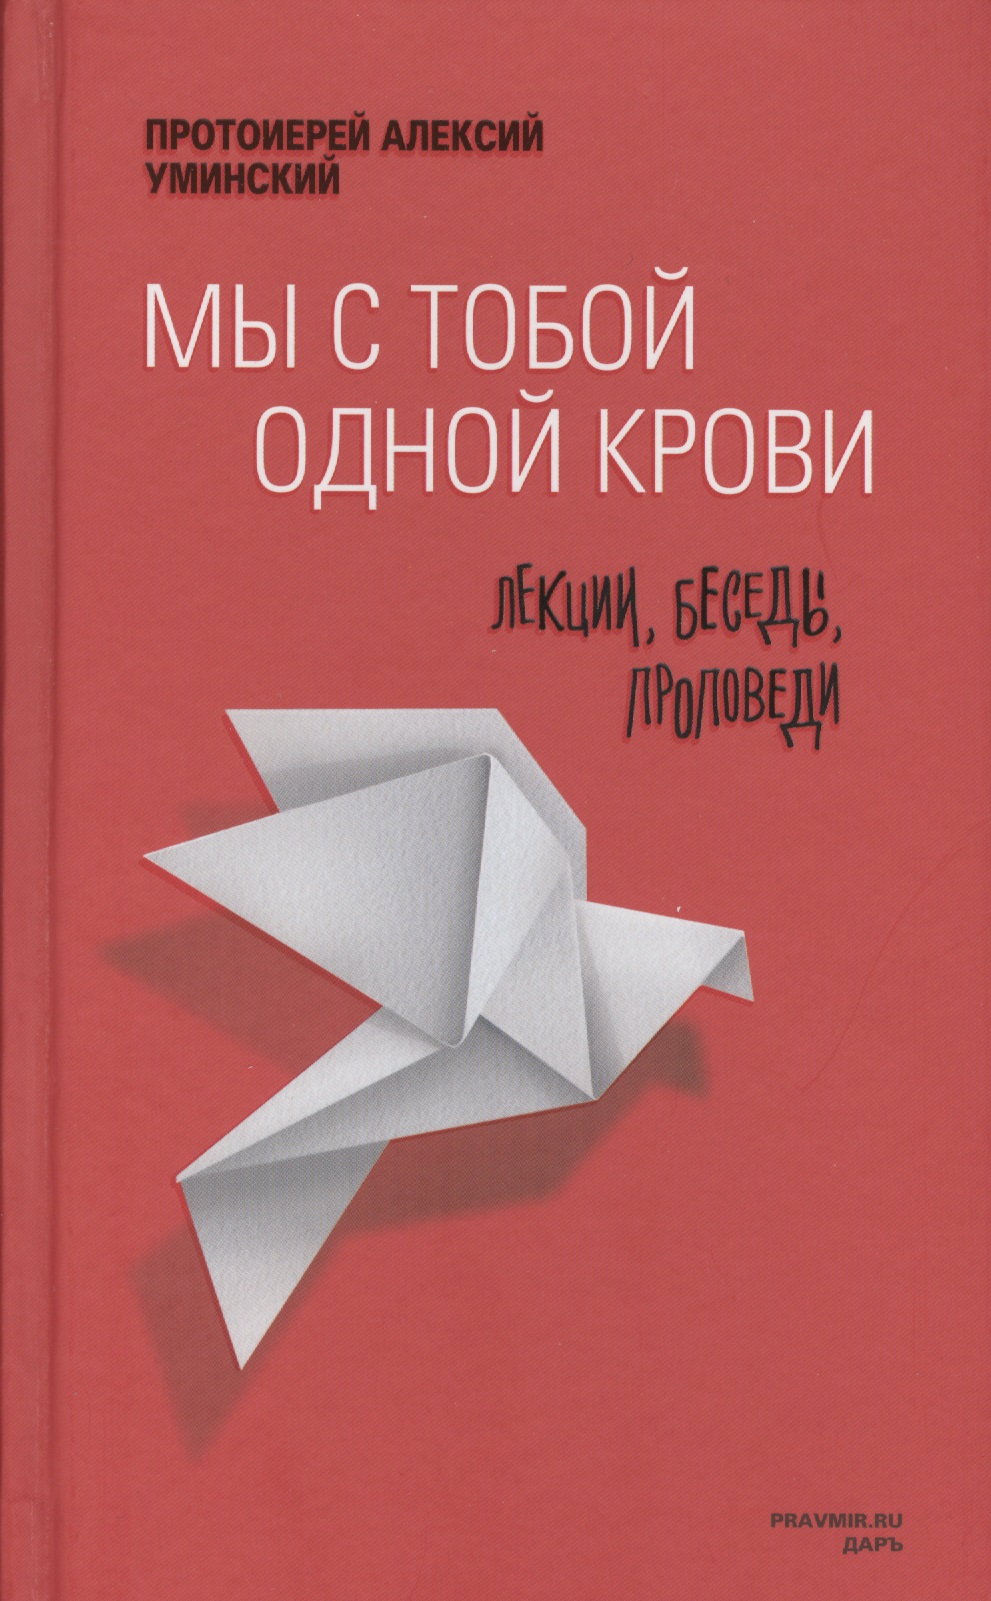 Мы с тобой одной крови Лекции беседы проповеди (2 изд) Уминский